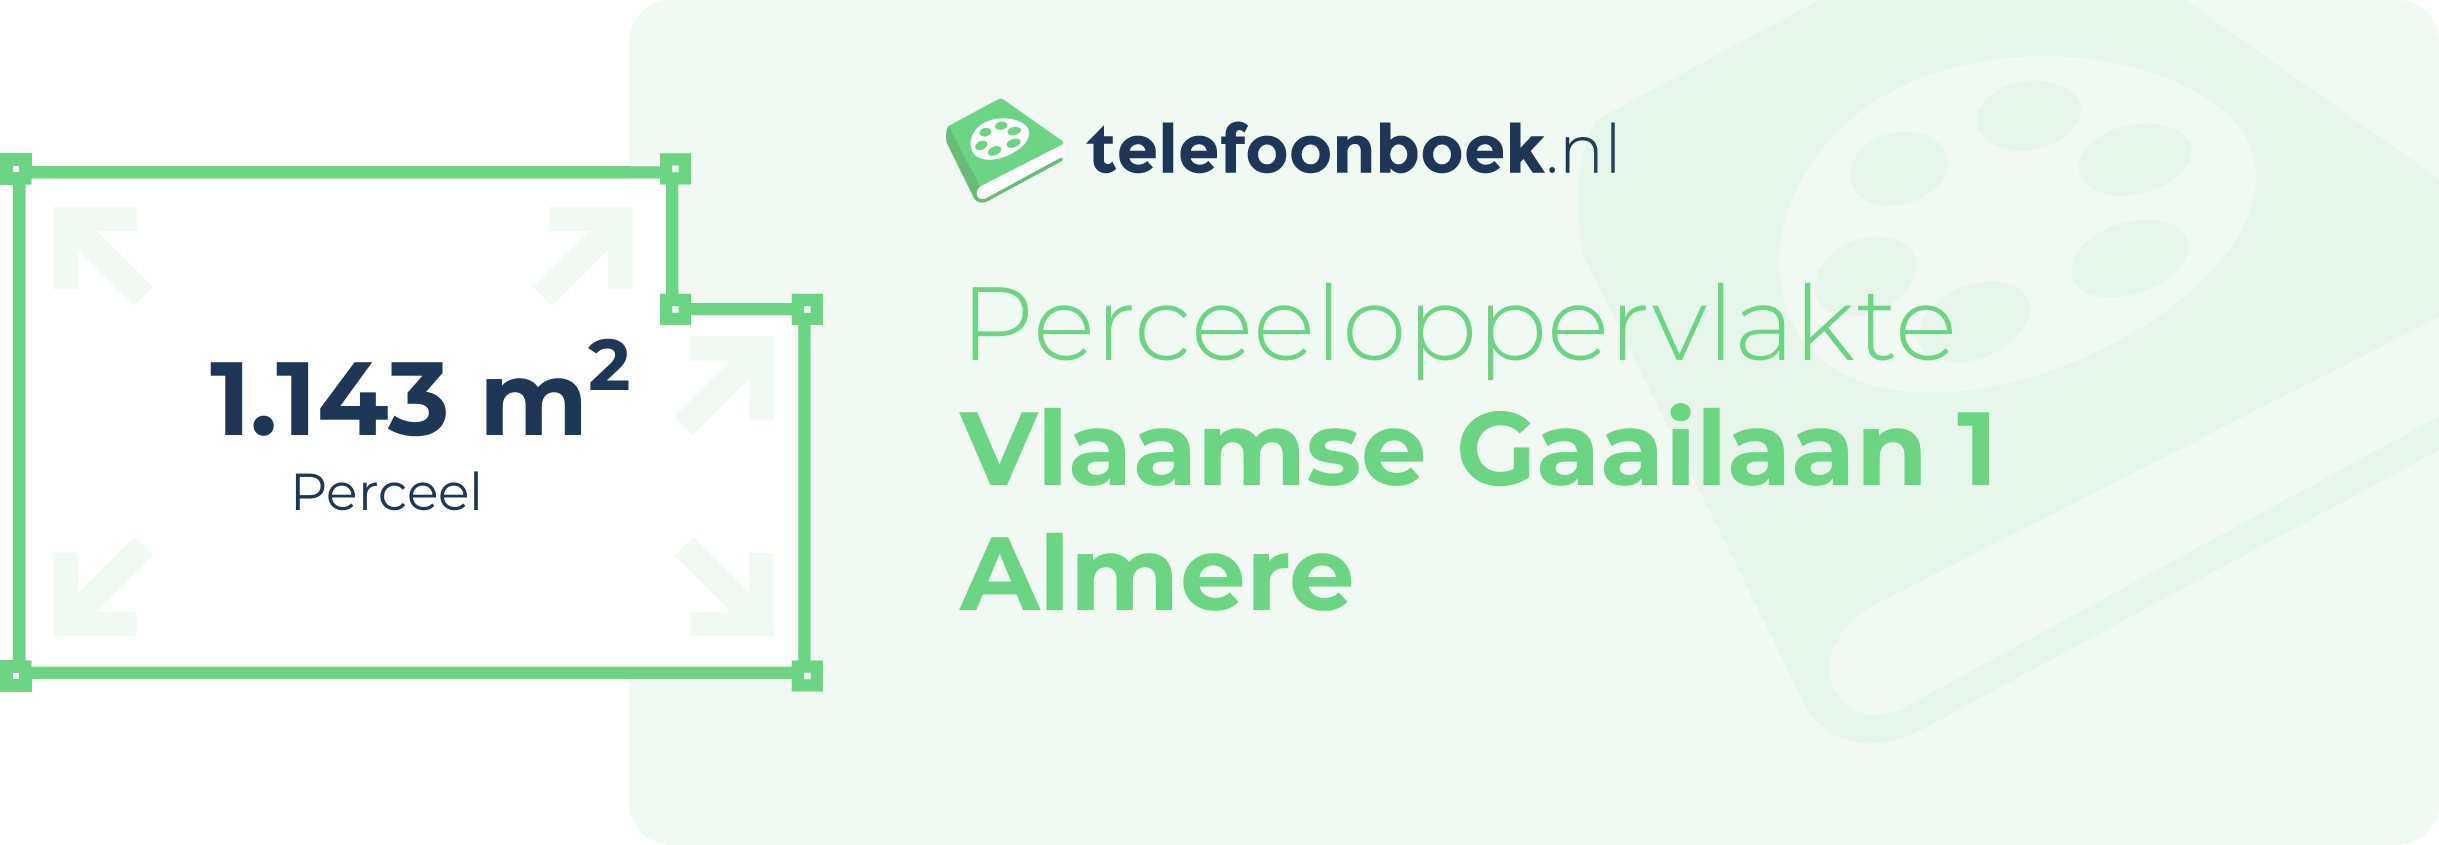 Perceeloppervlakte Vlaamse Gaailaan 1 Almere